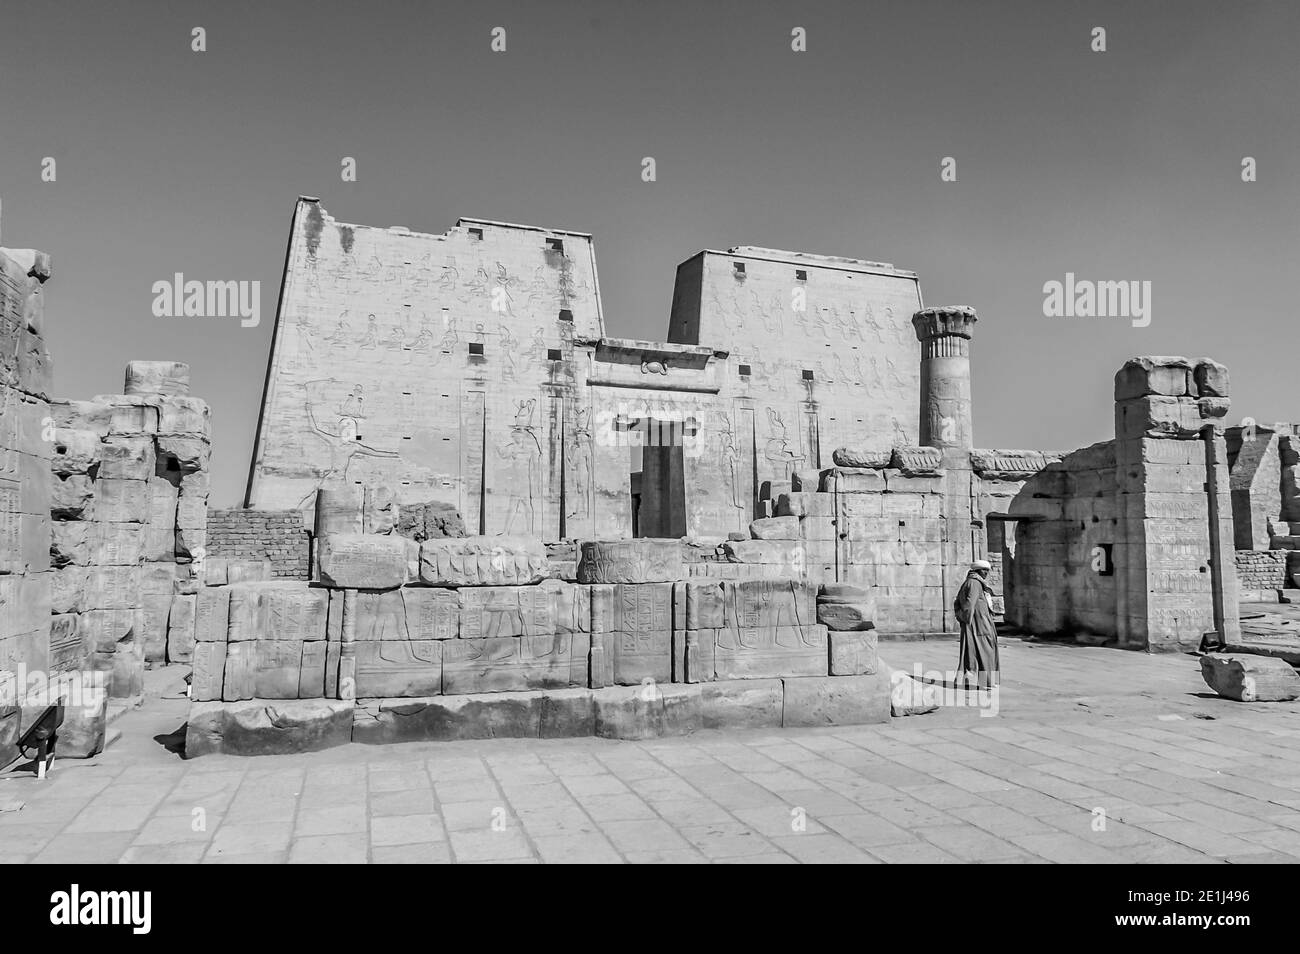 Edfu. Dies ist der Tempel von Horus the Falcon God aus dem Jahr 200 v. Chr., der sich auf halbem Weg zwischen Luxor und Assuan am Nil und der Stadt Edfu befindet, die für ihre riesigen Masten, fein dekorierten Säulen, kartuschierten Hieroglyphen, die Wandtafeln erzählen, und feine Kunstwerke an den Decken berühmt ist. Der Tempel war glücklich, dass die Mehrheit von ihm vom Wind geblasen Sand bedeckt wurde, wodurch der Tempel von den Elementen für Jahrhunderte bewahrt wurde. Stockfoto